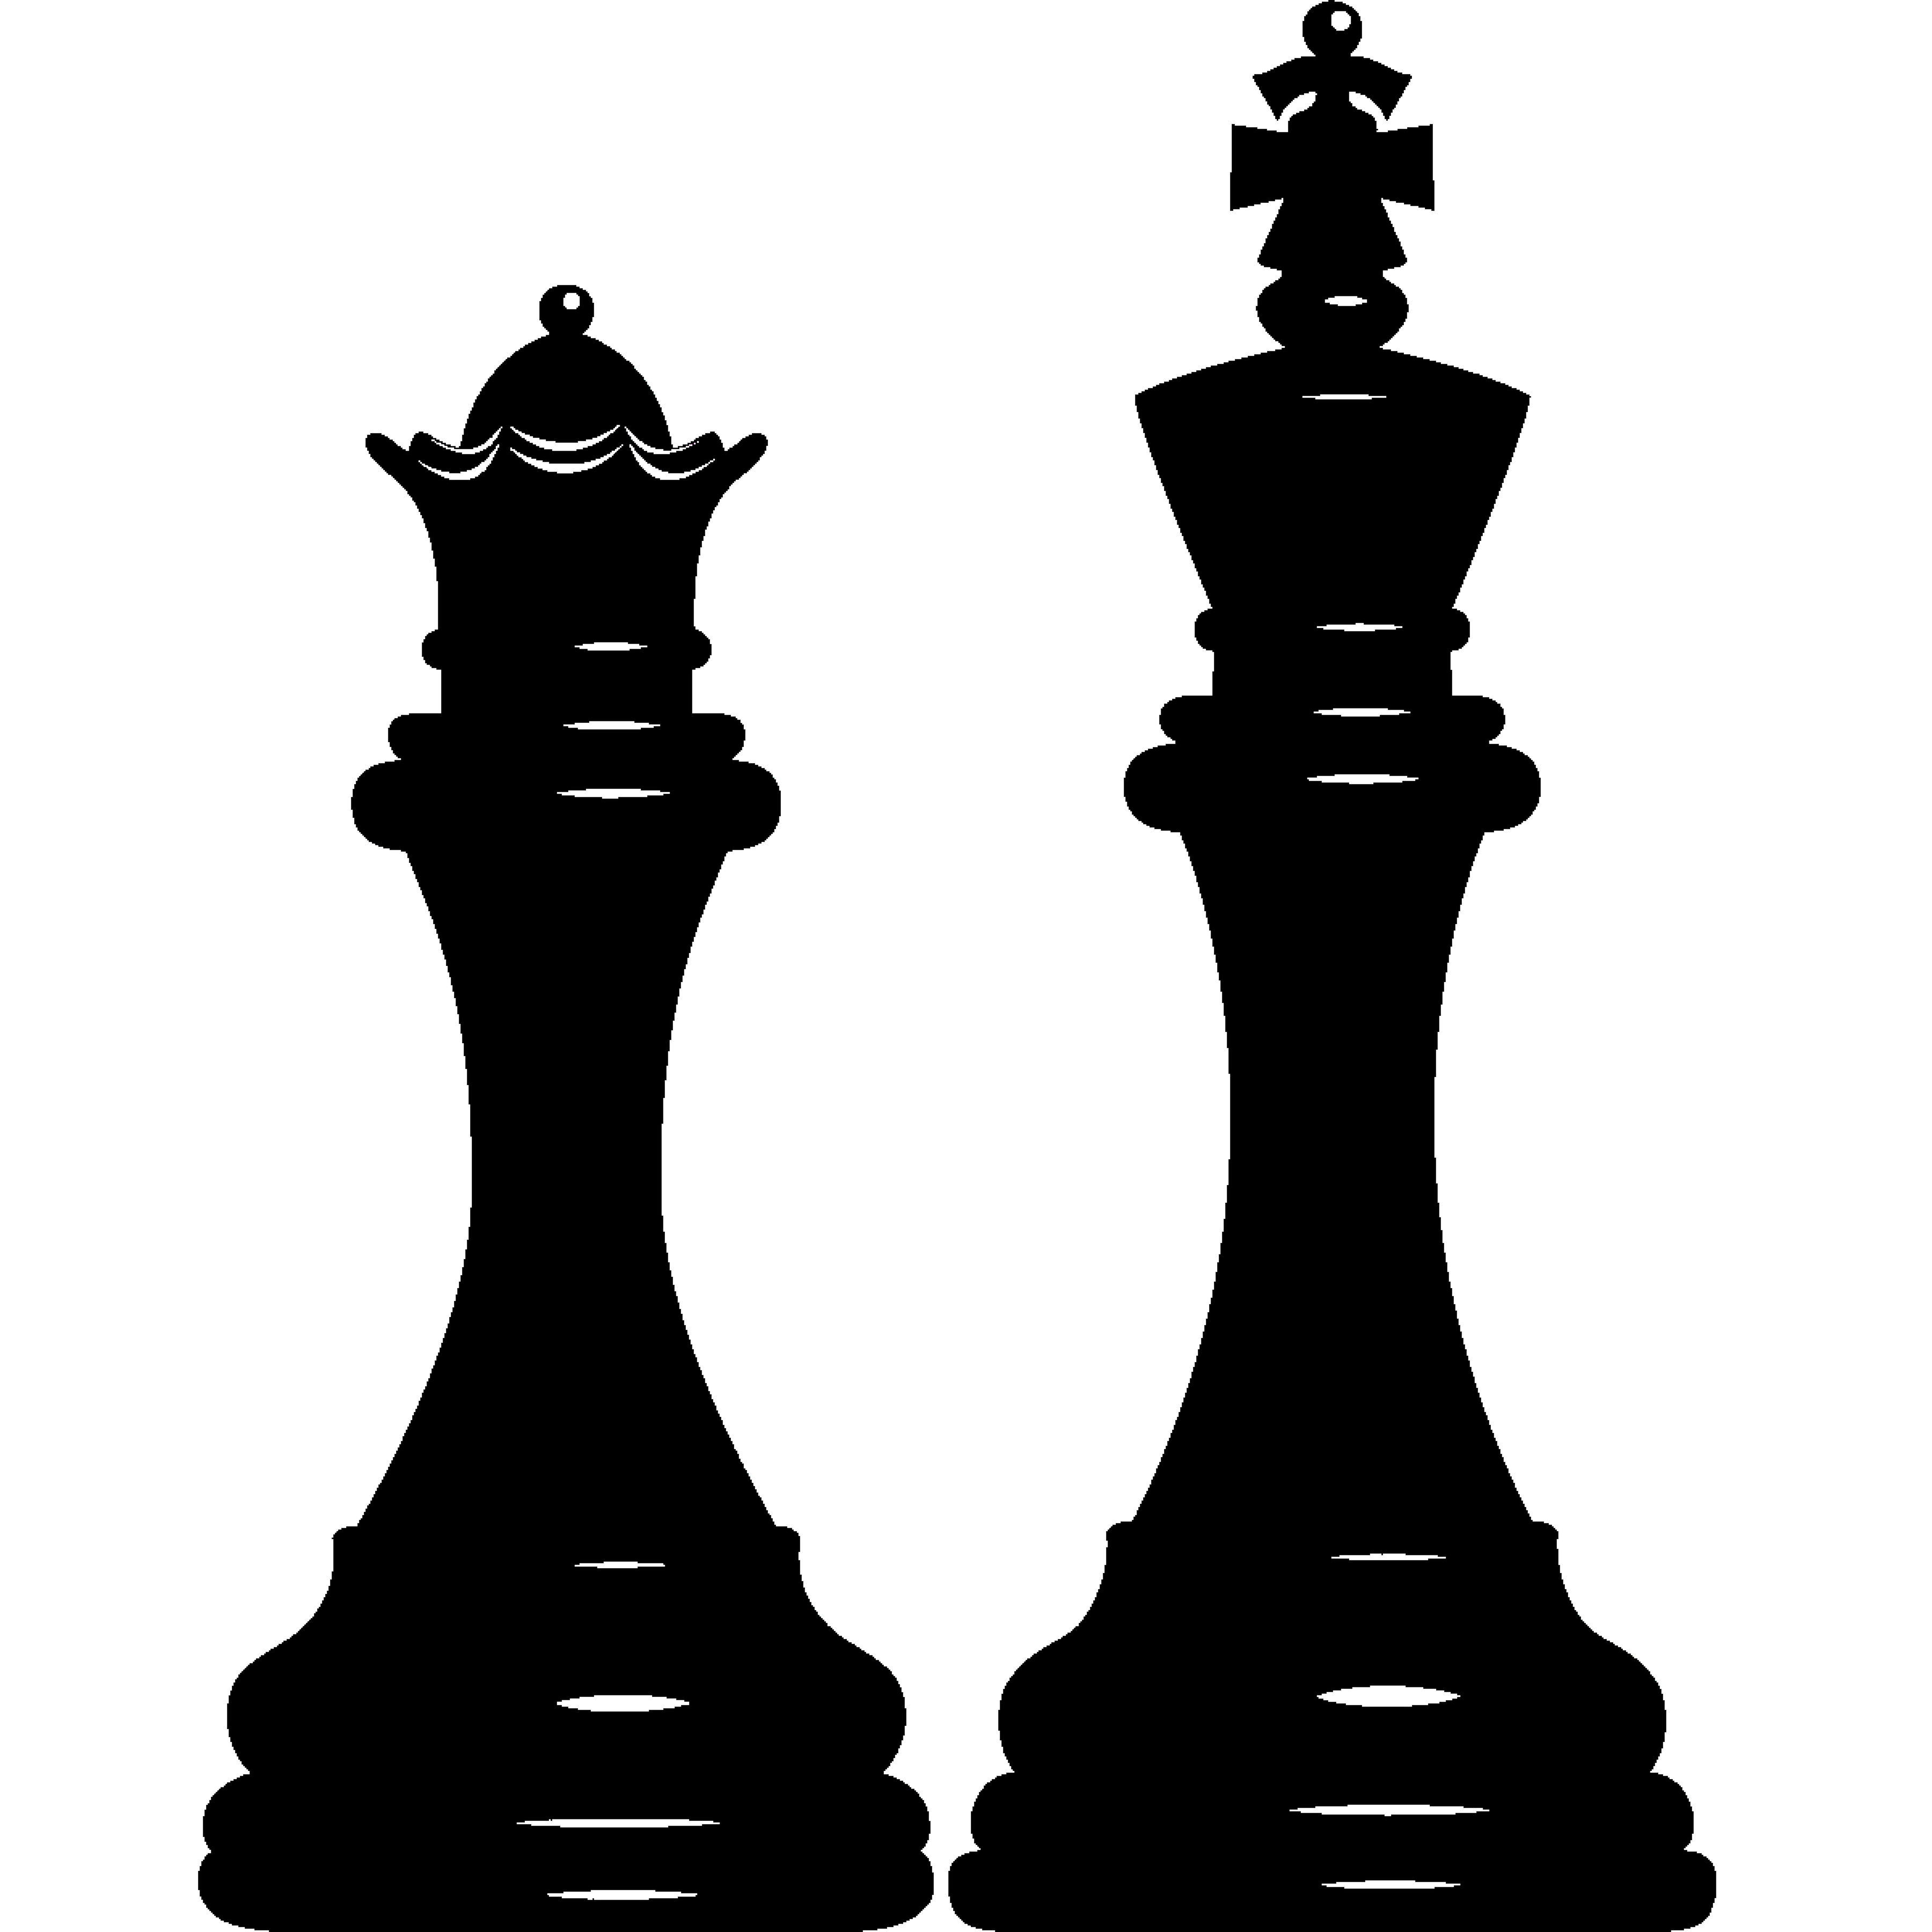 Jeux d'échecs